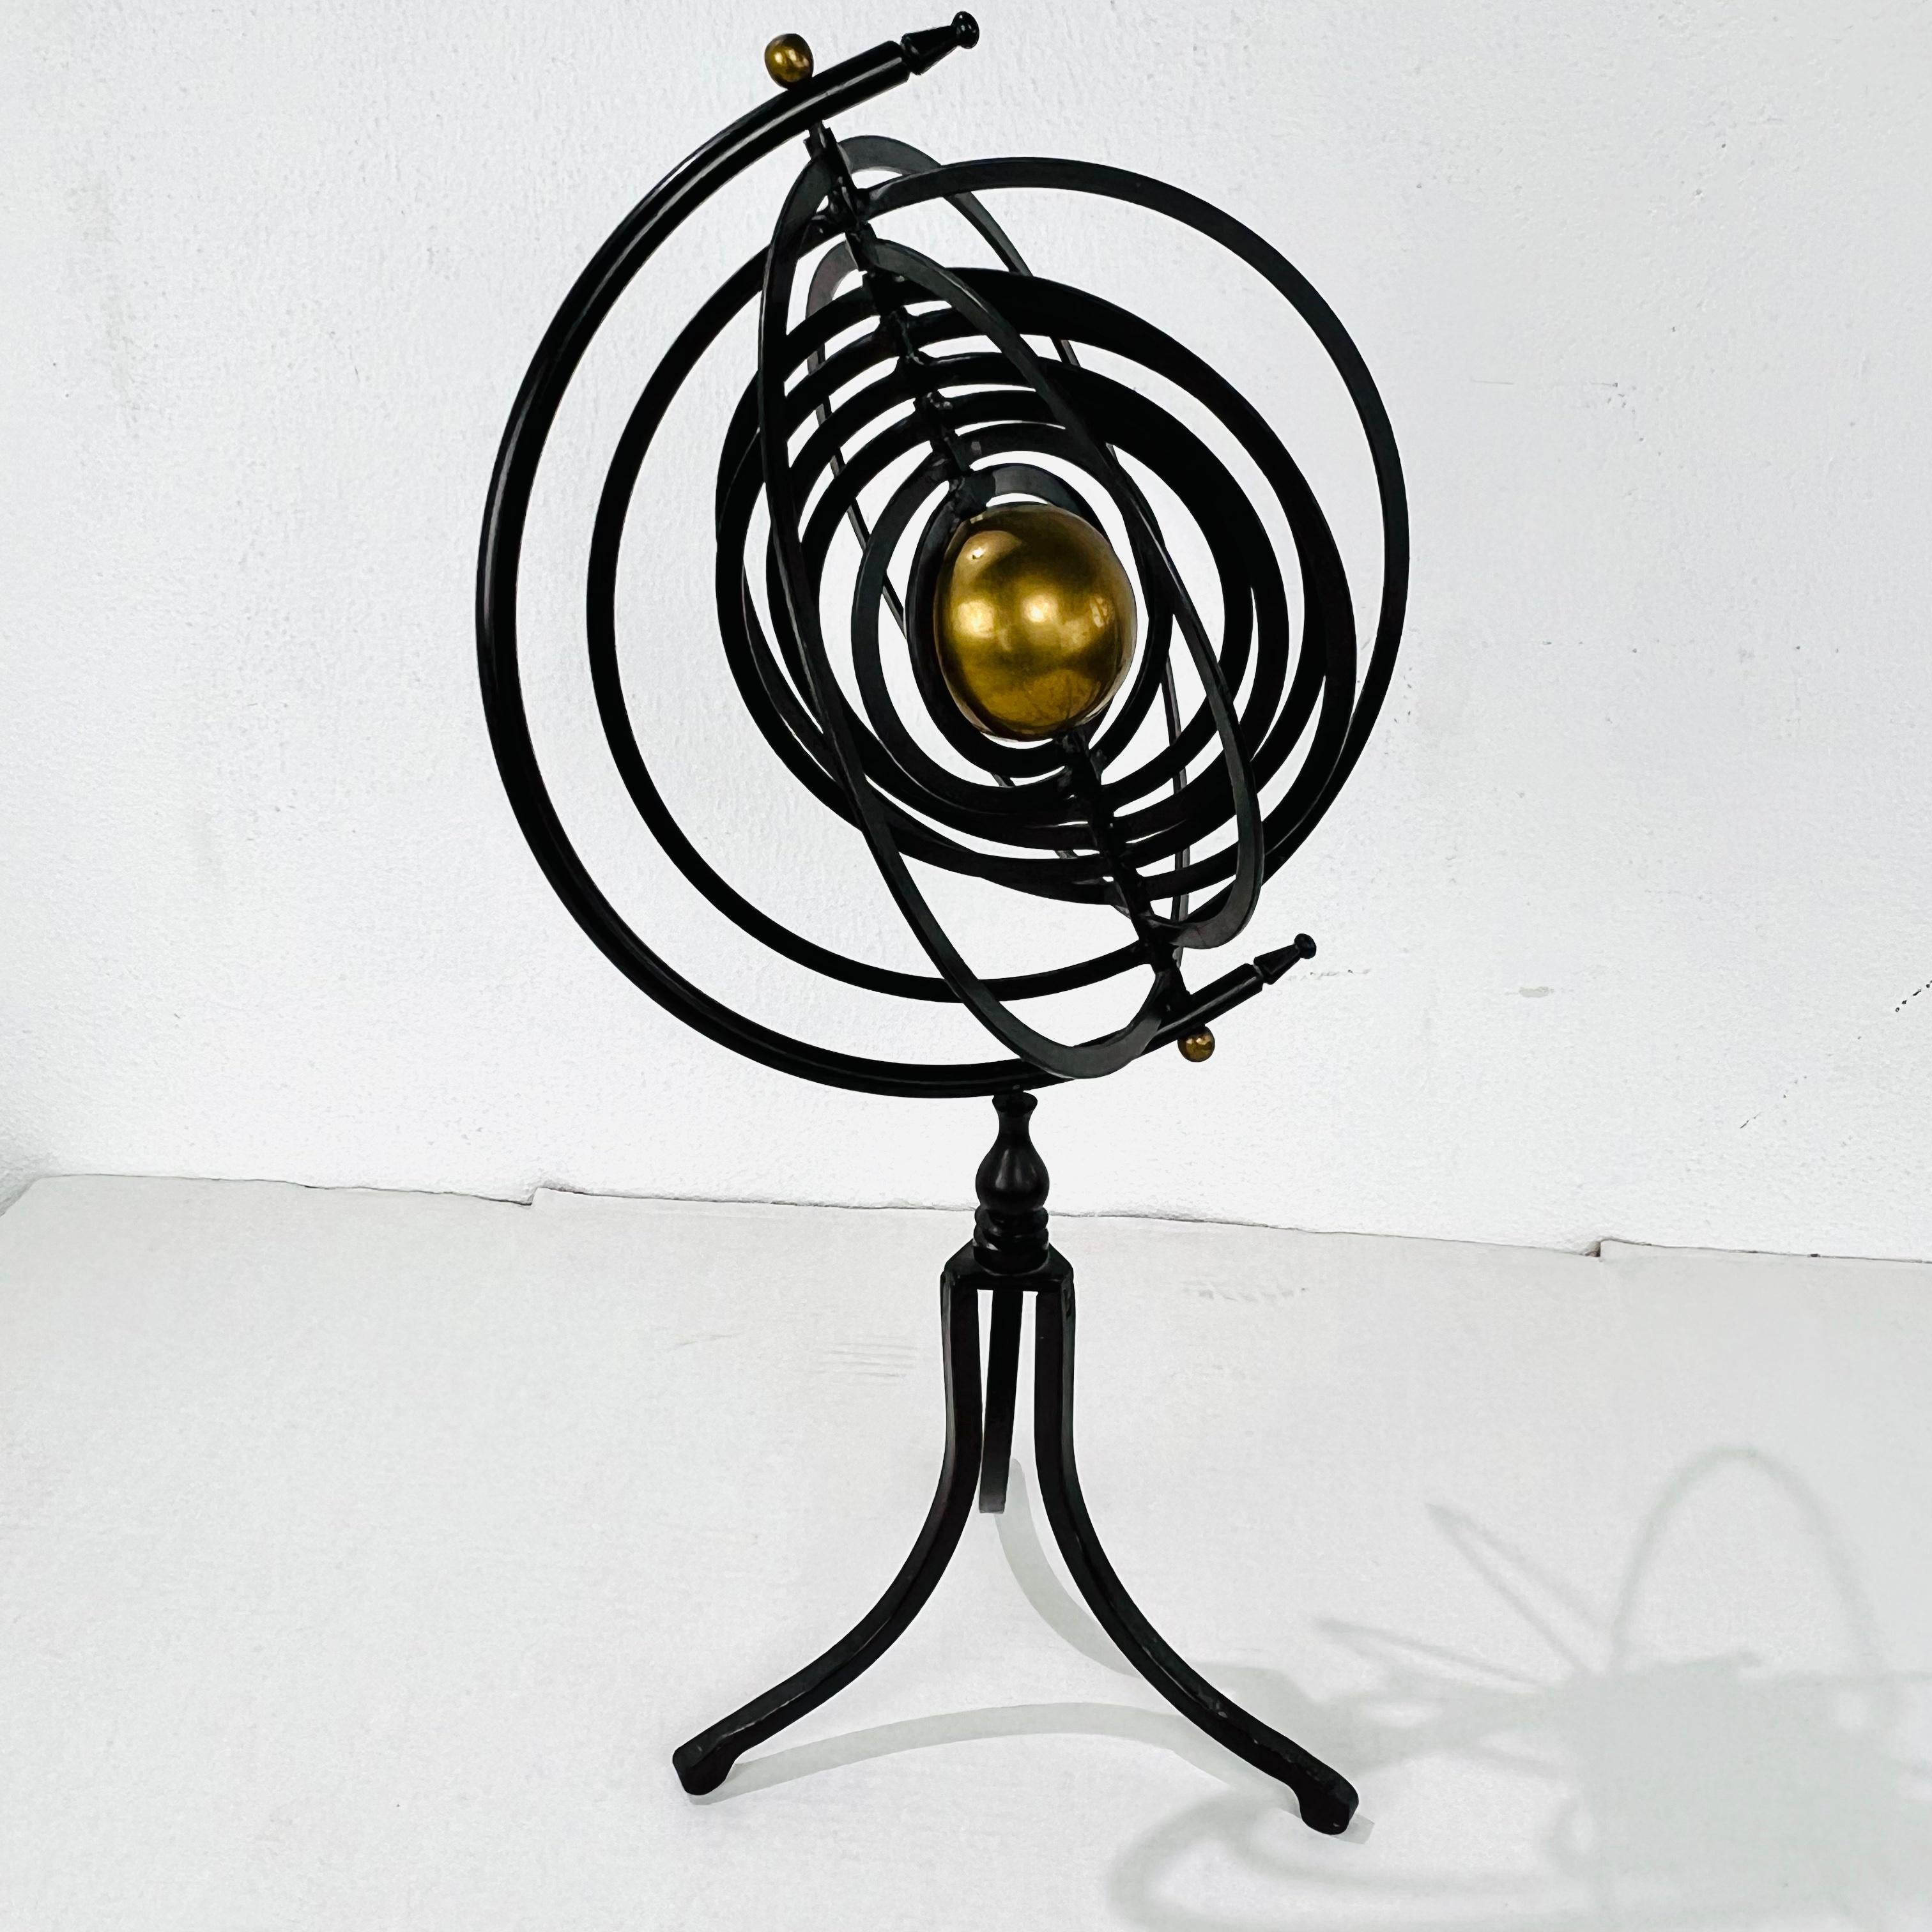 Globe armillaire tournant en laiton et en fer, avec neuf anneaux et une sphère centrale de 3